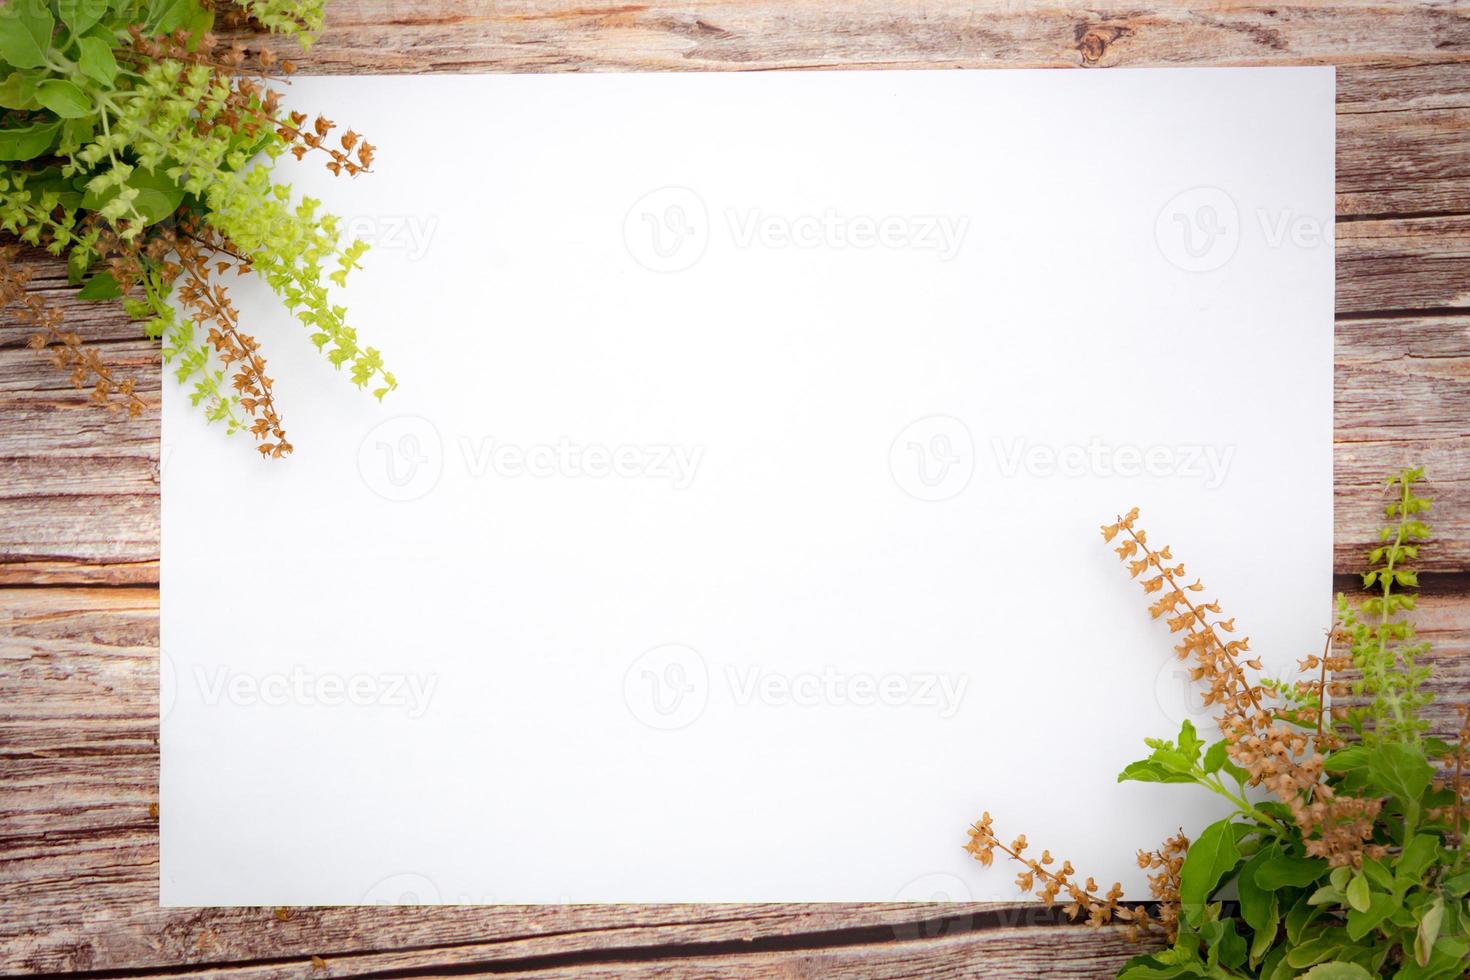 grüne basilikumblumen und leeres papierblatt auf einem hölzernen hintergrund. frühlingsgrenze grüne blüte, draufsicht, leeres papier für text, flache lage. foto